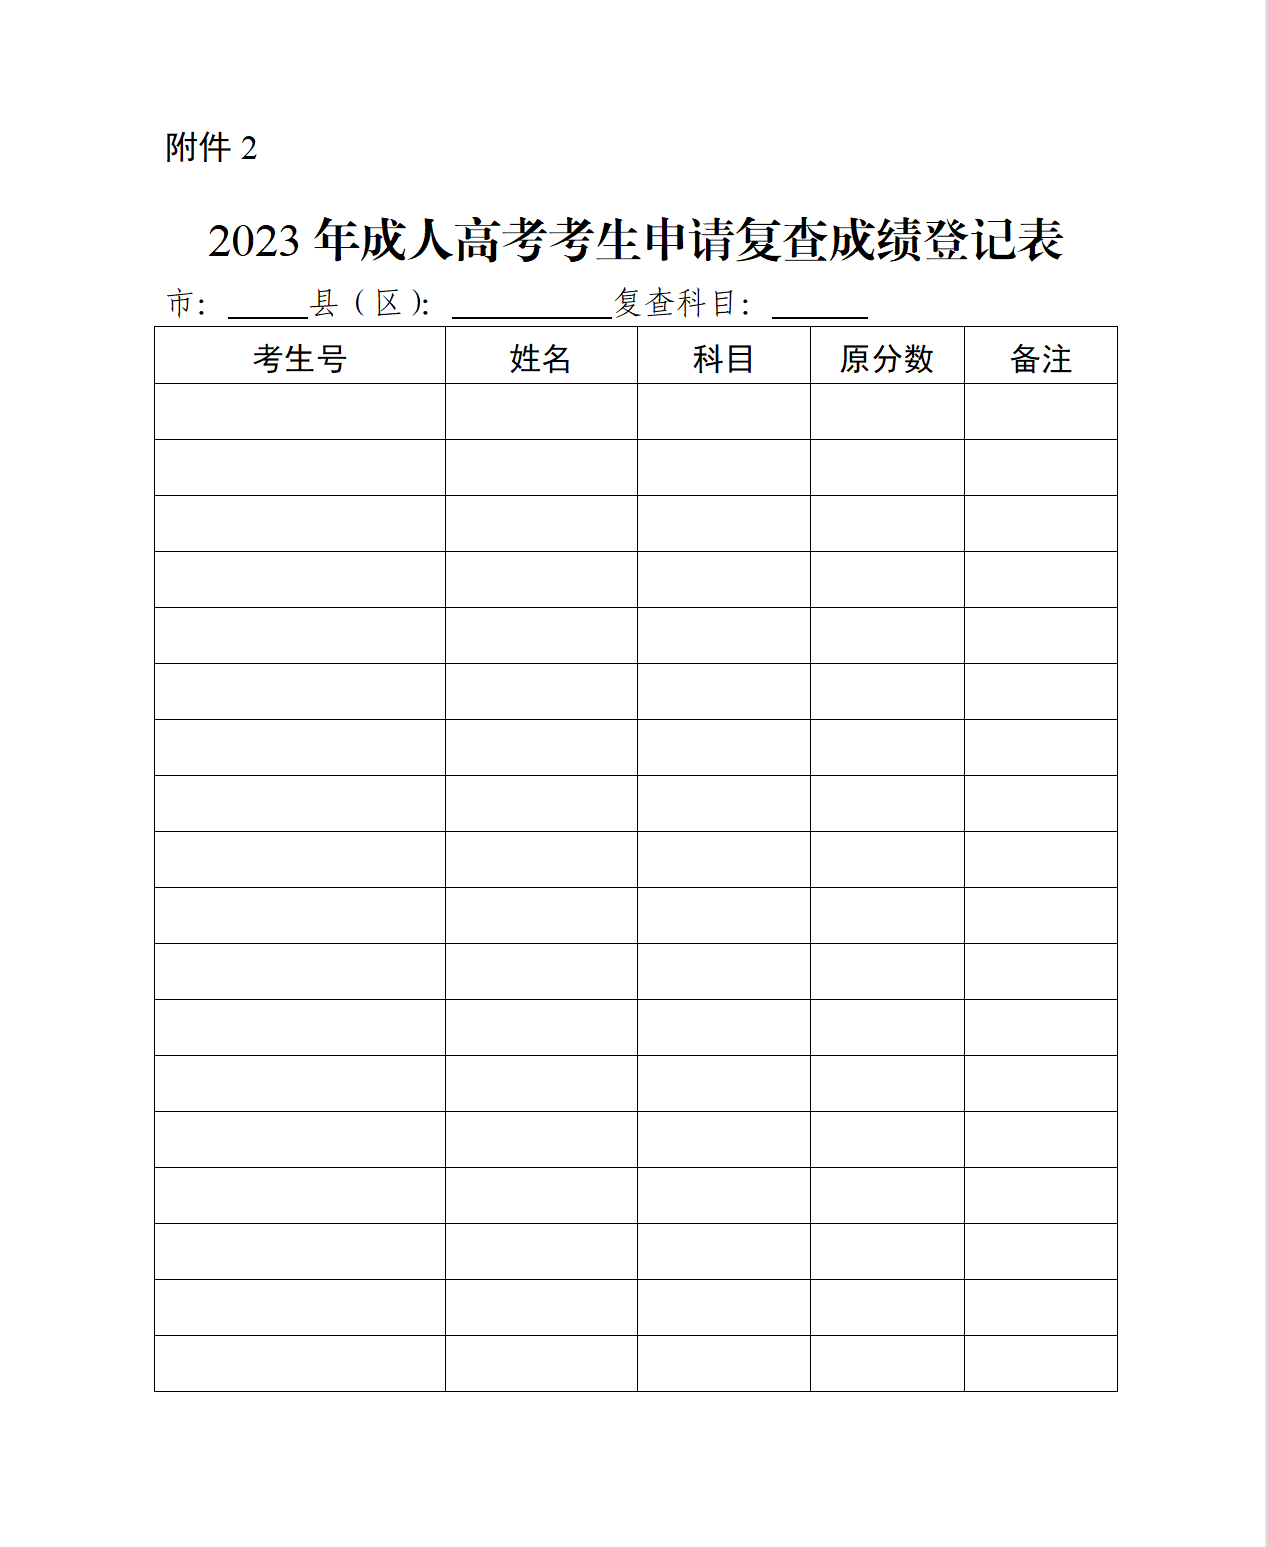 2023年东莞成人高考长安镇成绩公布(图1)